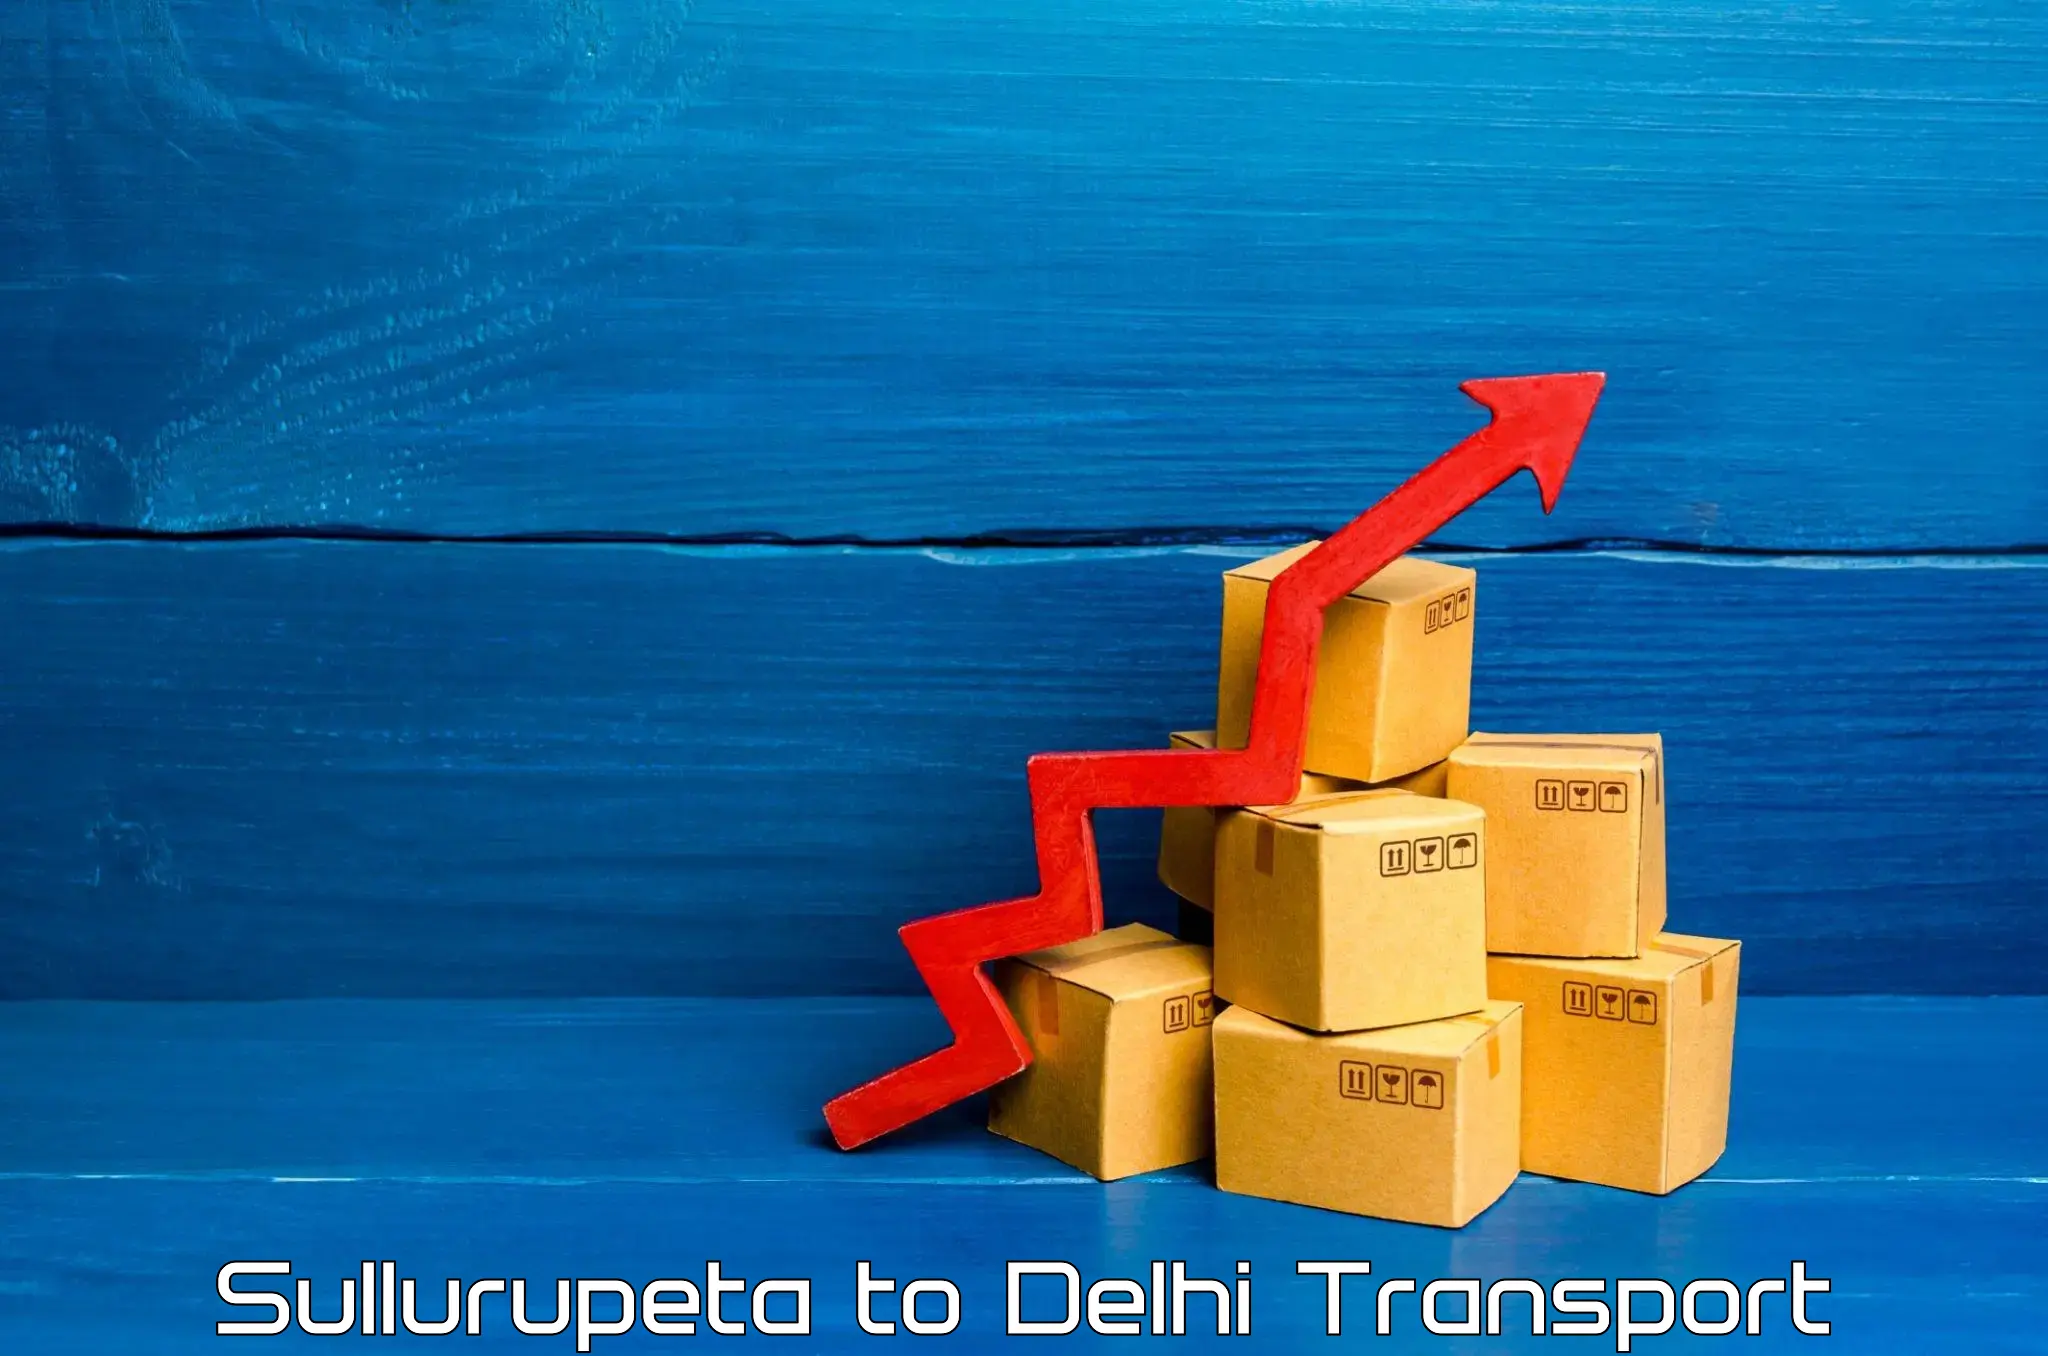 Part load transport service in India Sullurupeta to Jamia Millia Islamia New Delhi